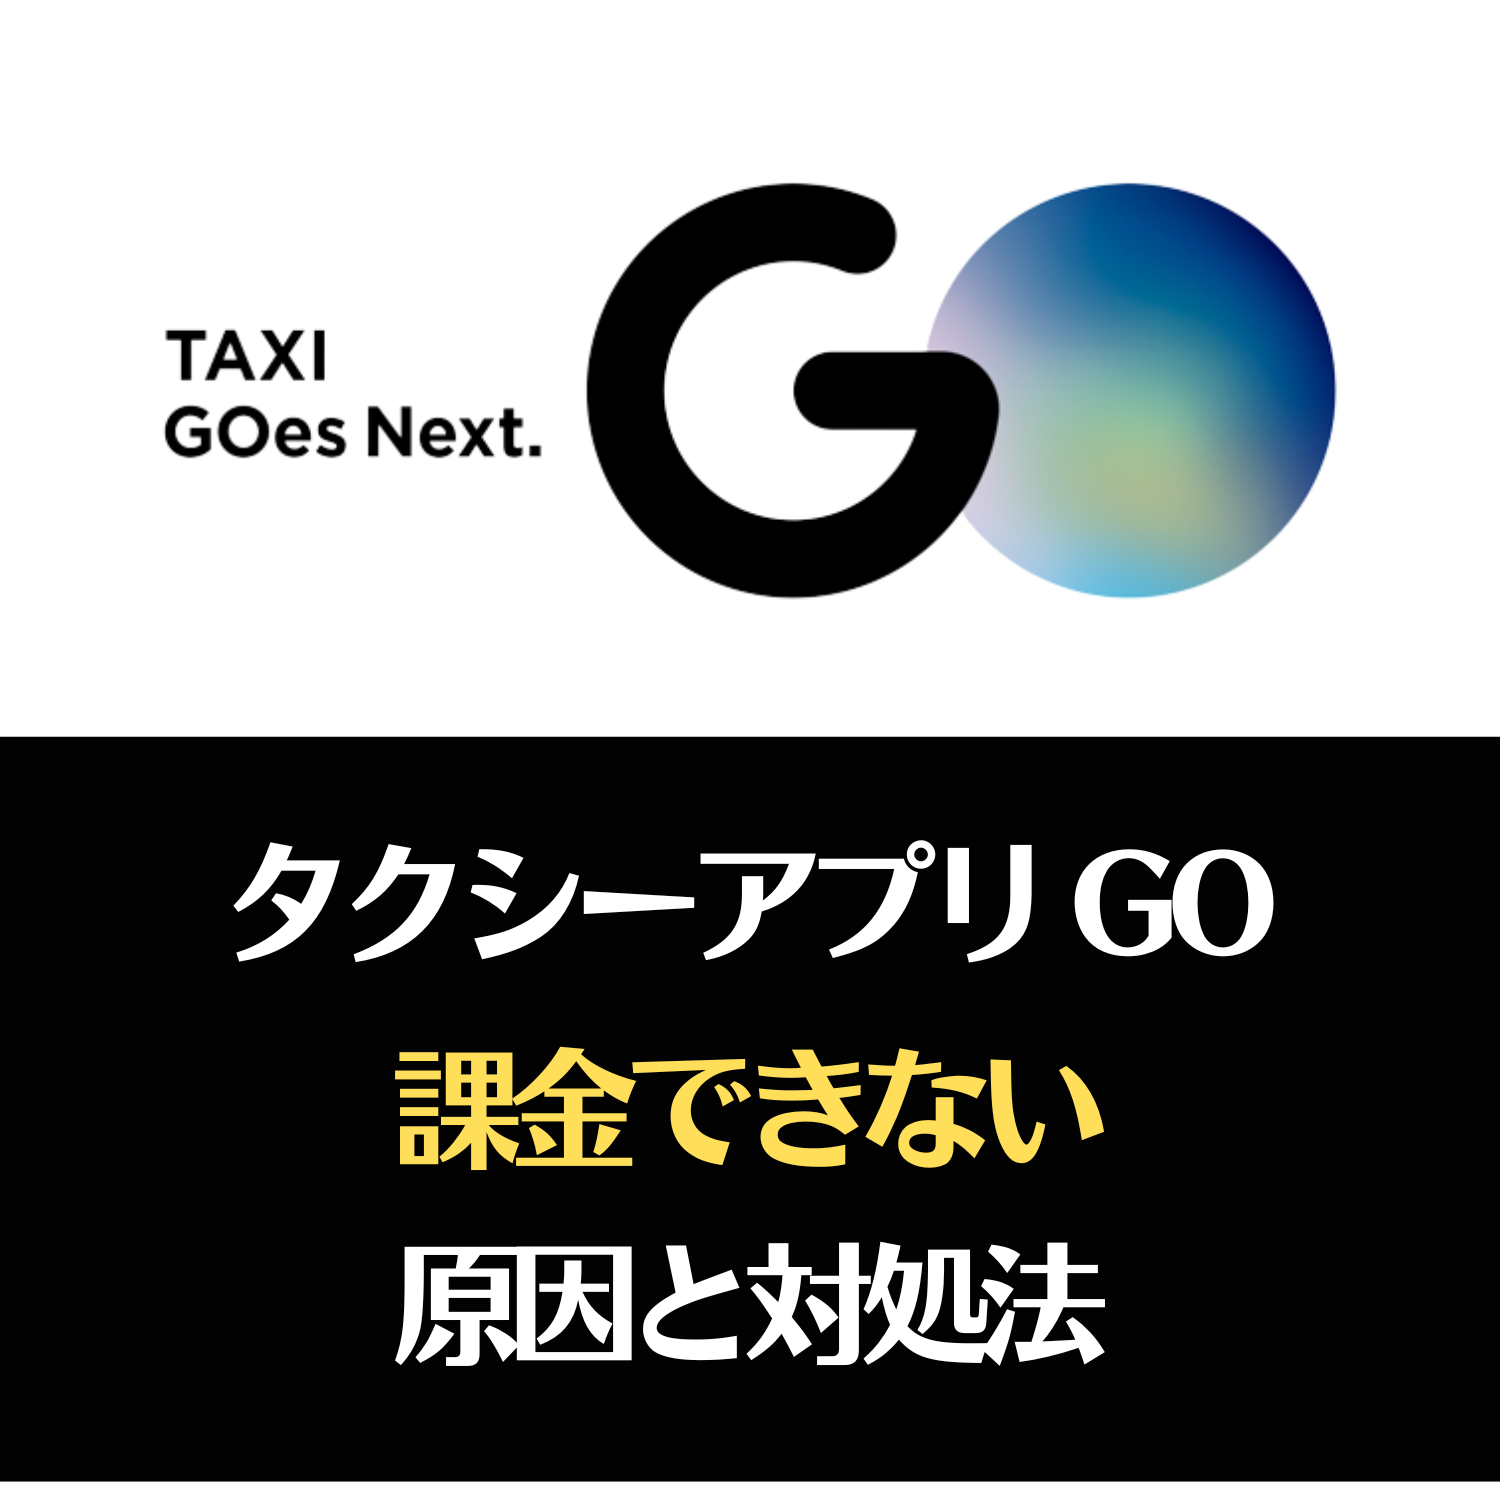 GO タクシーが呼べるアプリ 旧MOV×JapanTaxi(ゴー)に課金できない原因と対処法とは #ゴー